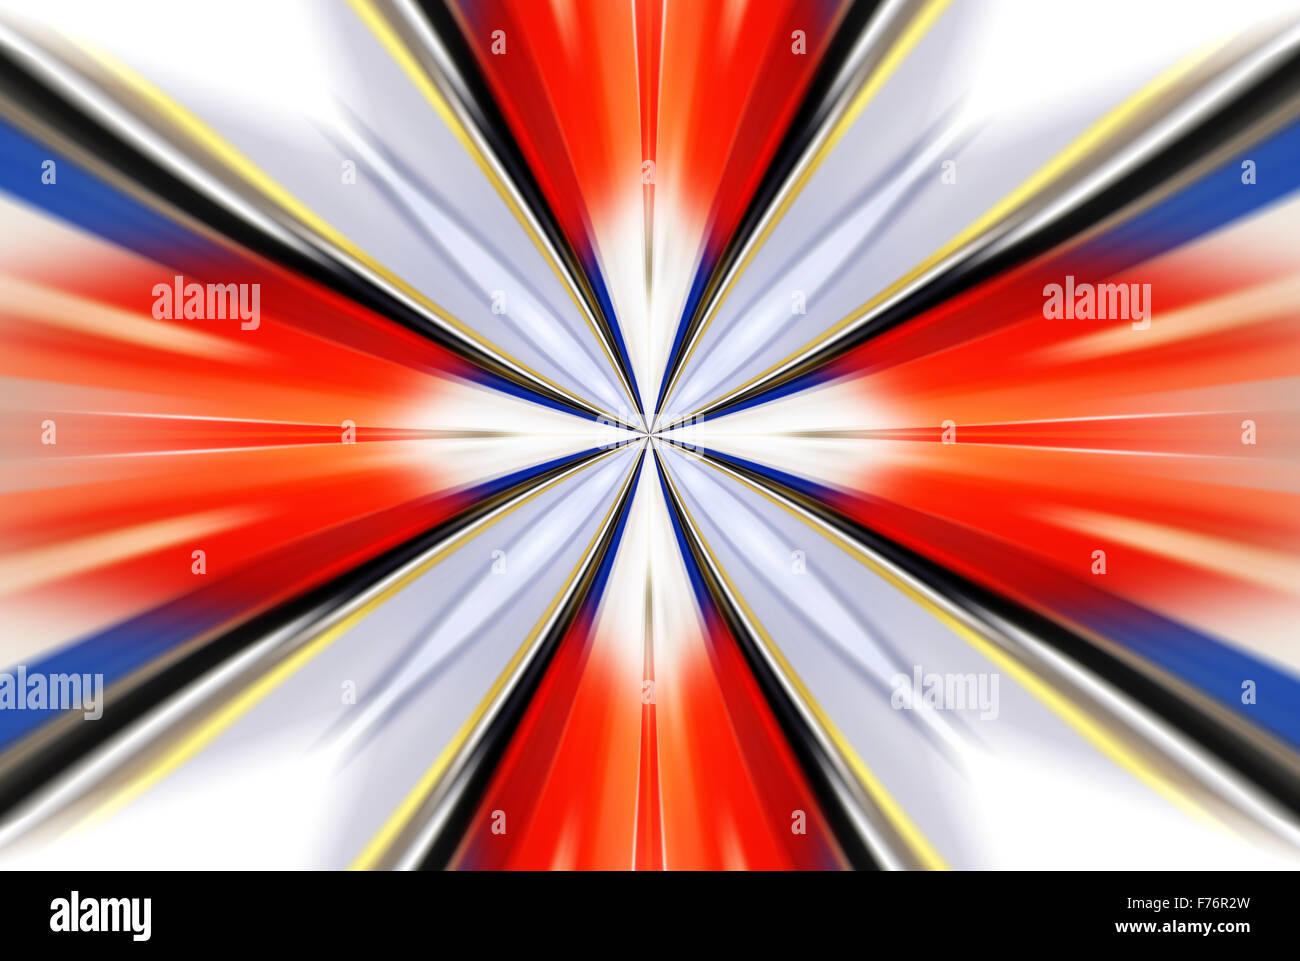 Multi-couleur lumineux graissé abstract background, illustration futuriste Banque D'Images